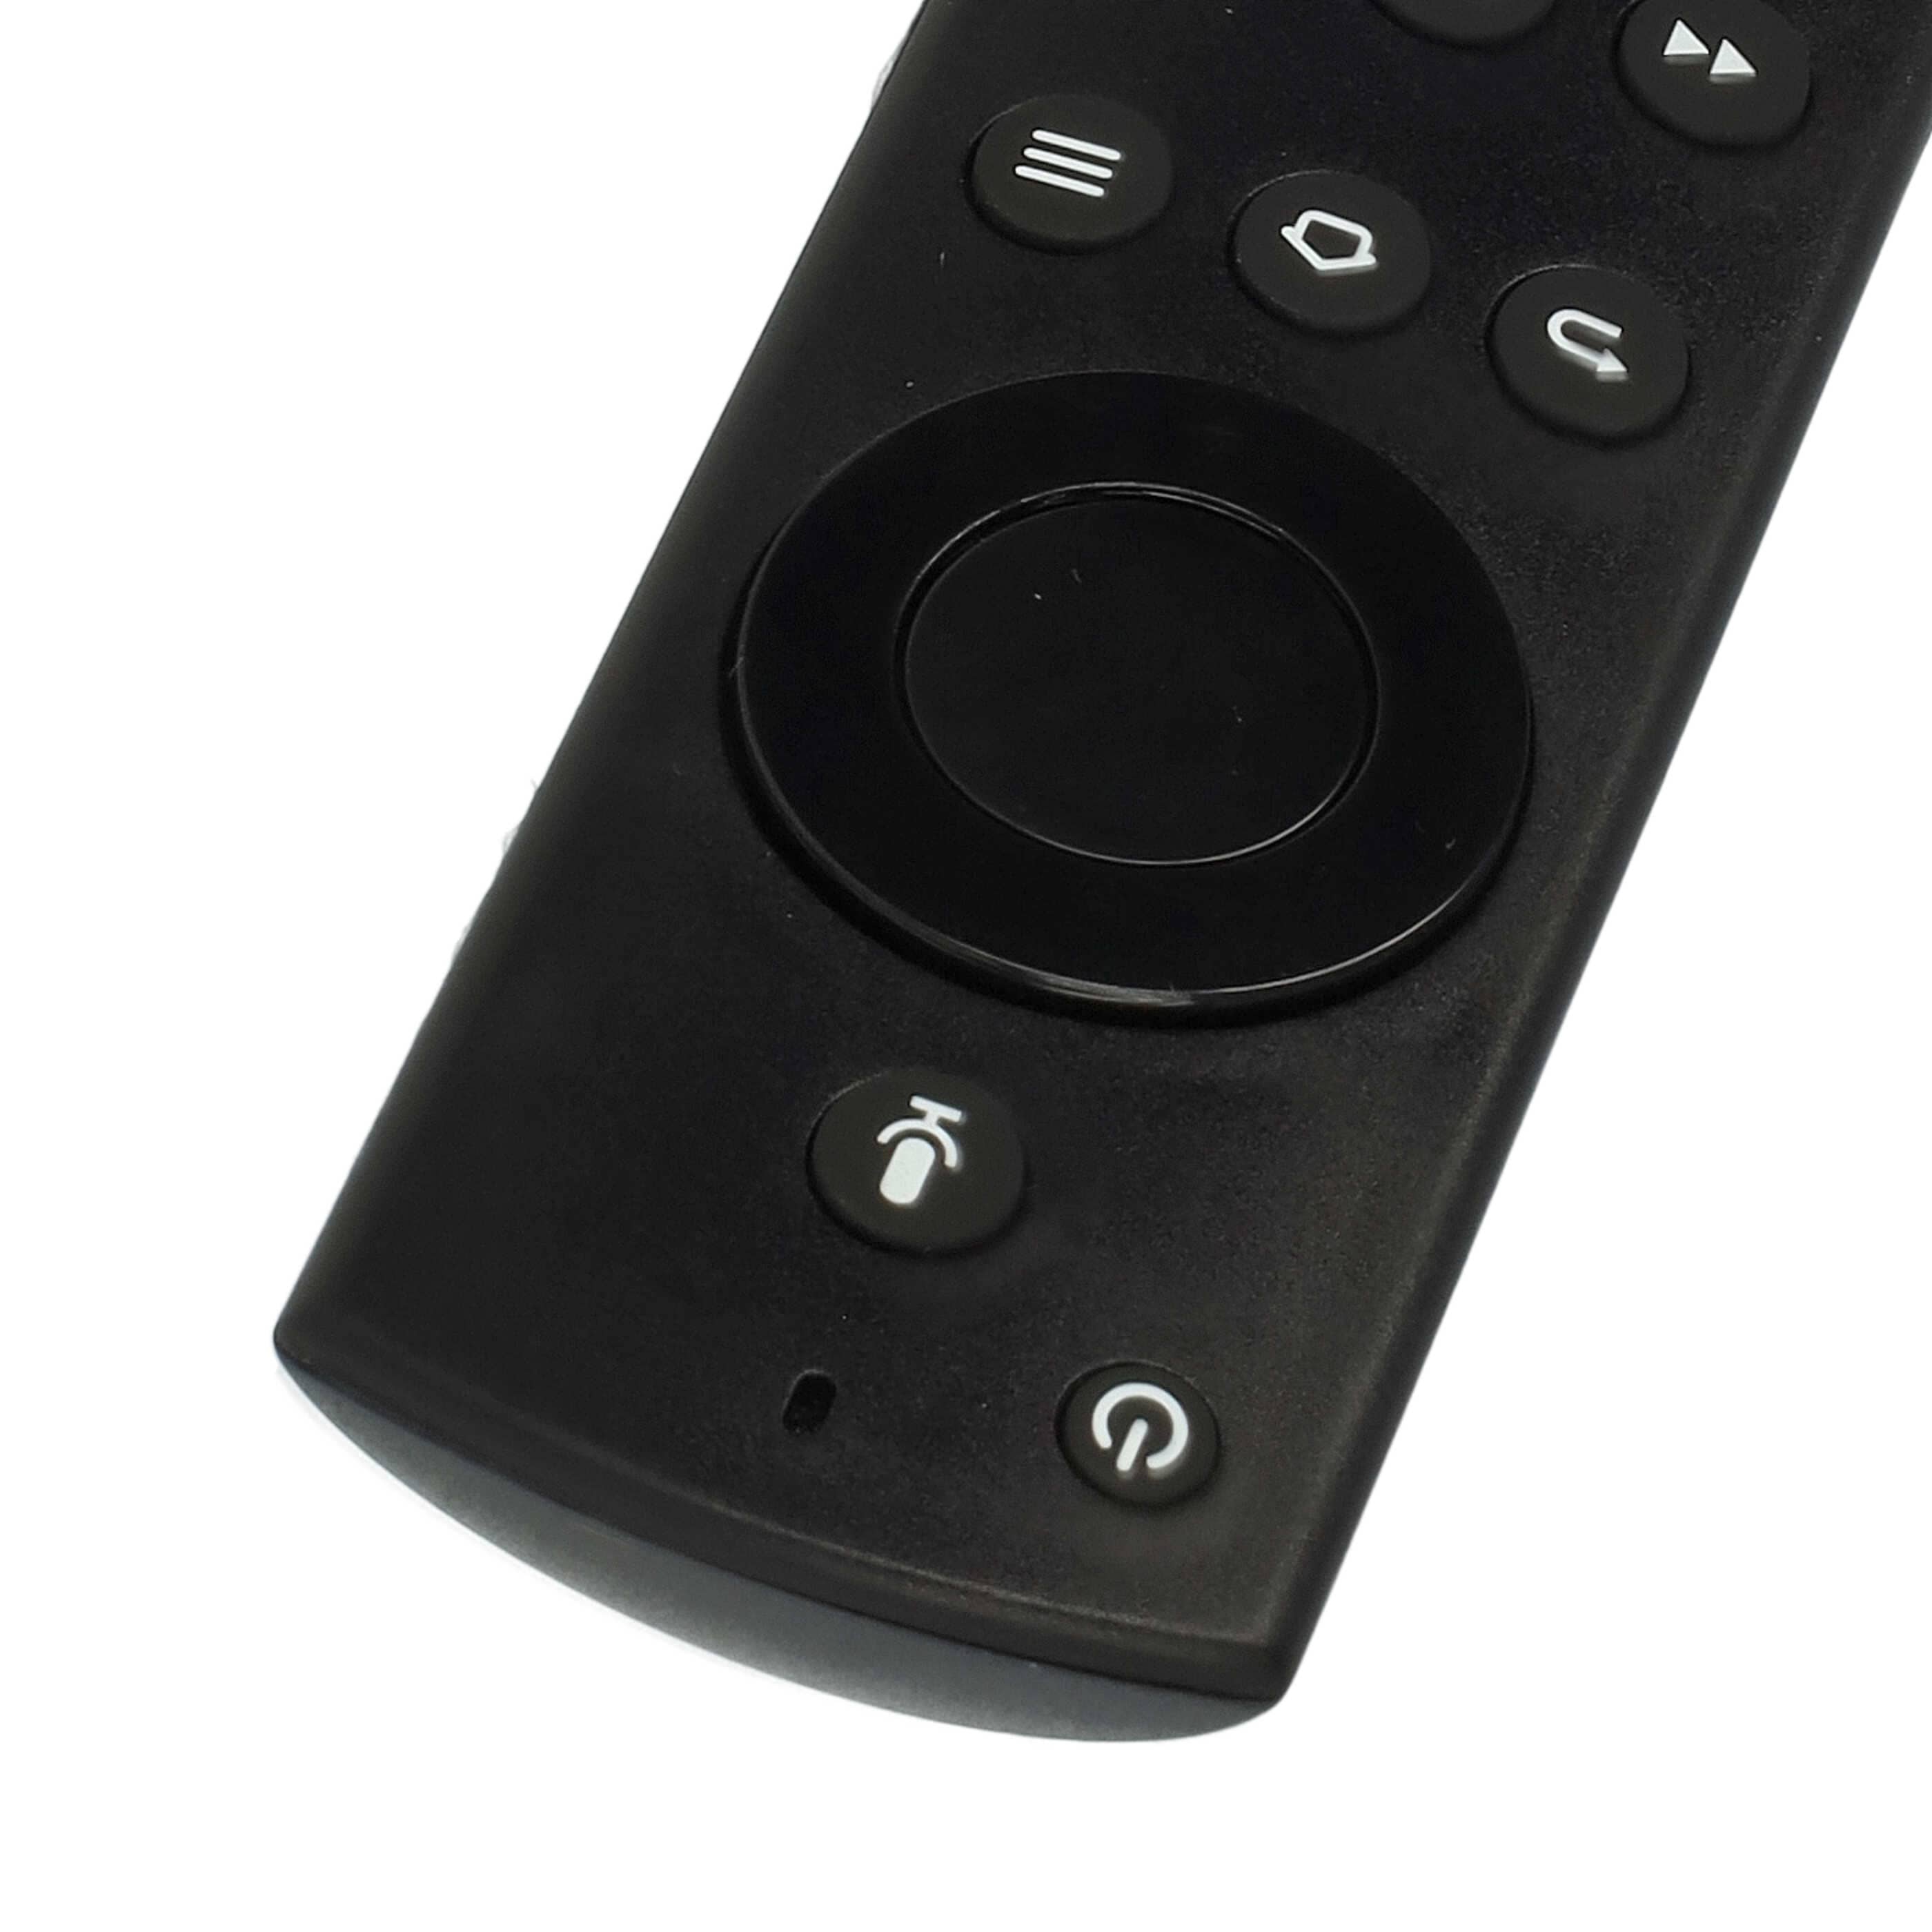 Remote Control replaces Amazon L5B83H for Amazon Streaming Box, Internet-TV Box